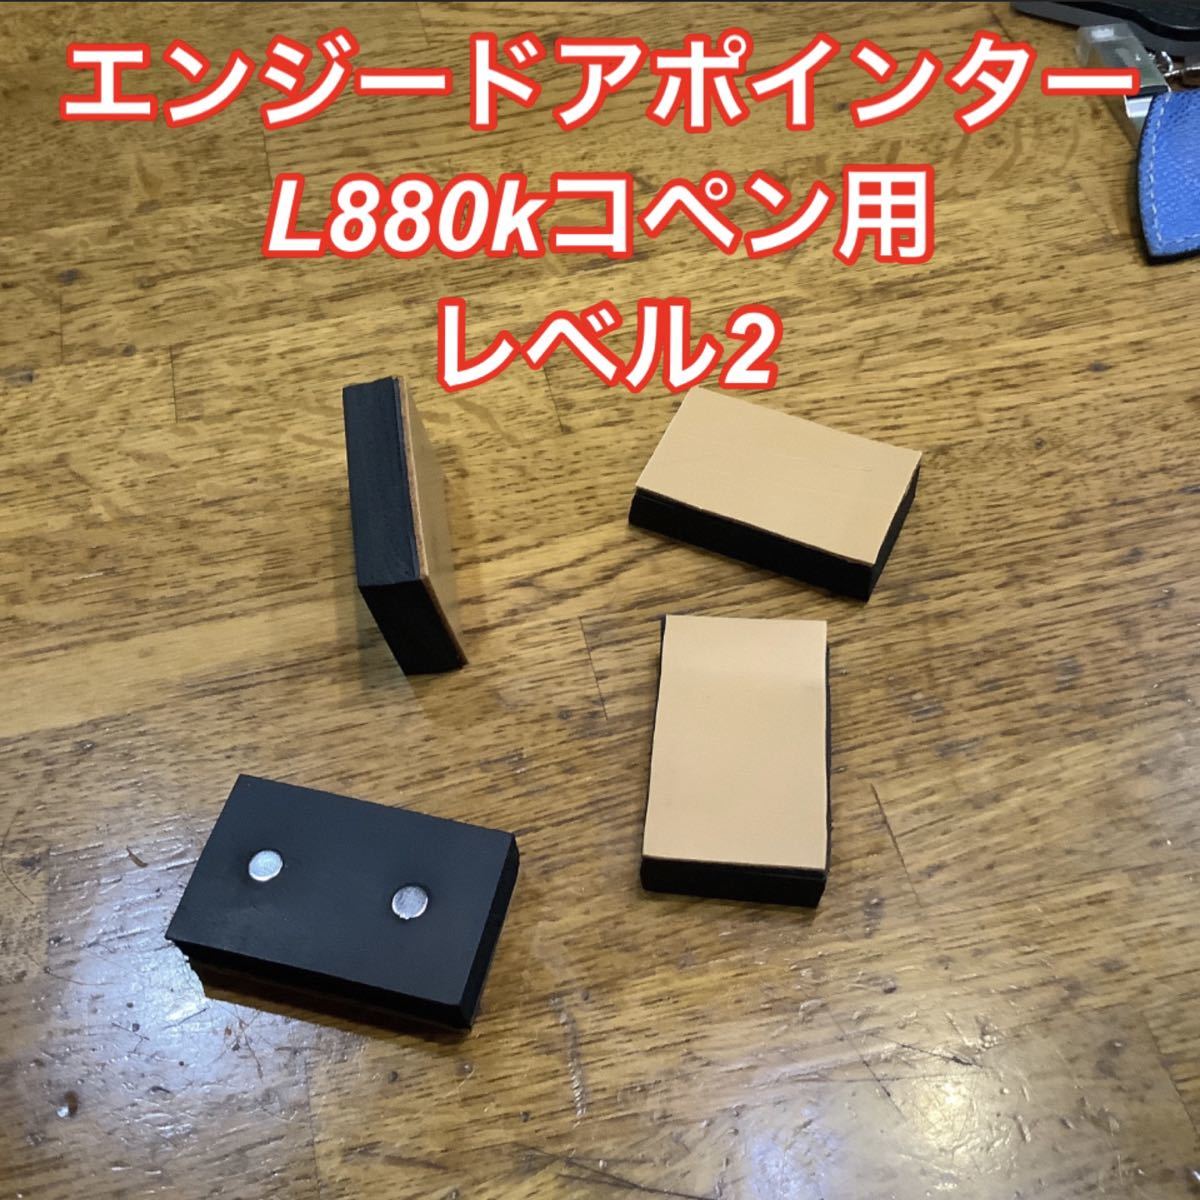 エンジードアポインターL880Kコペン用レベル2【送料無料】